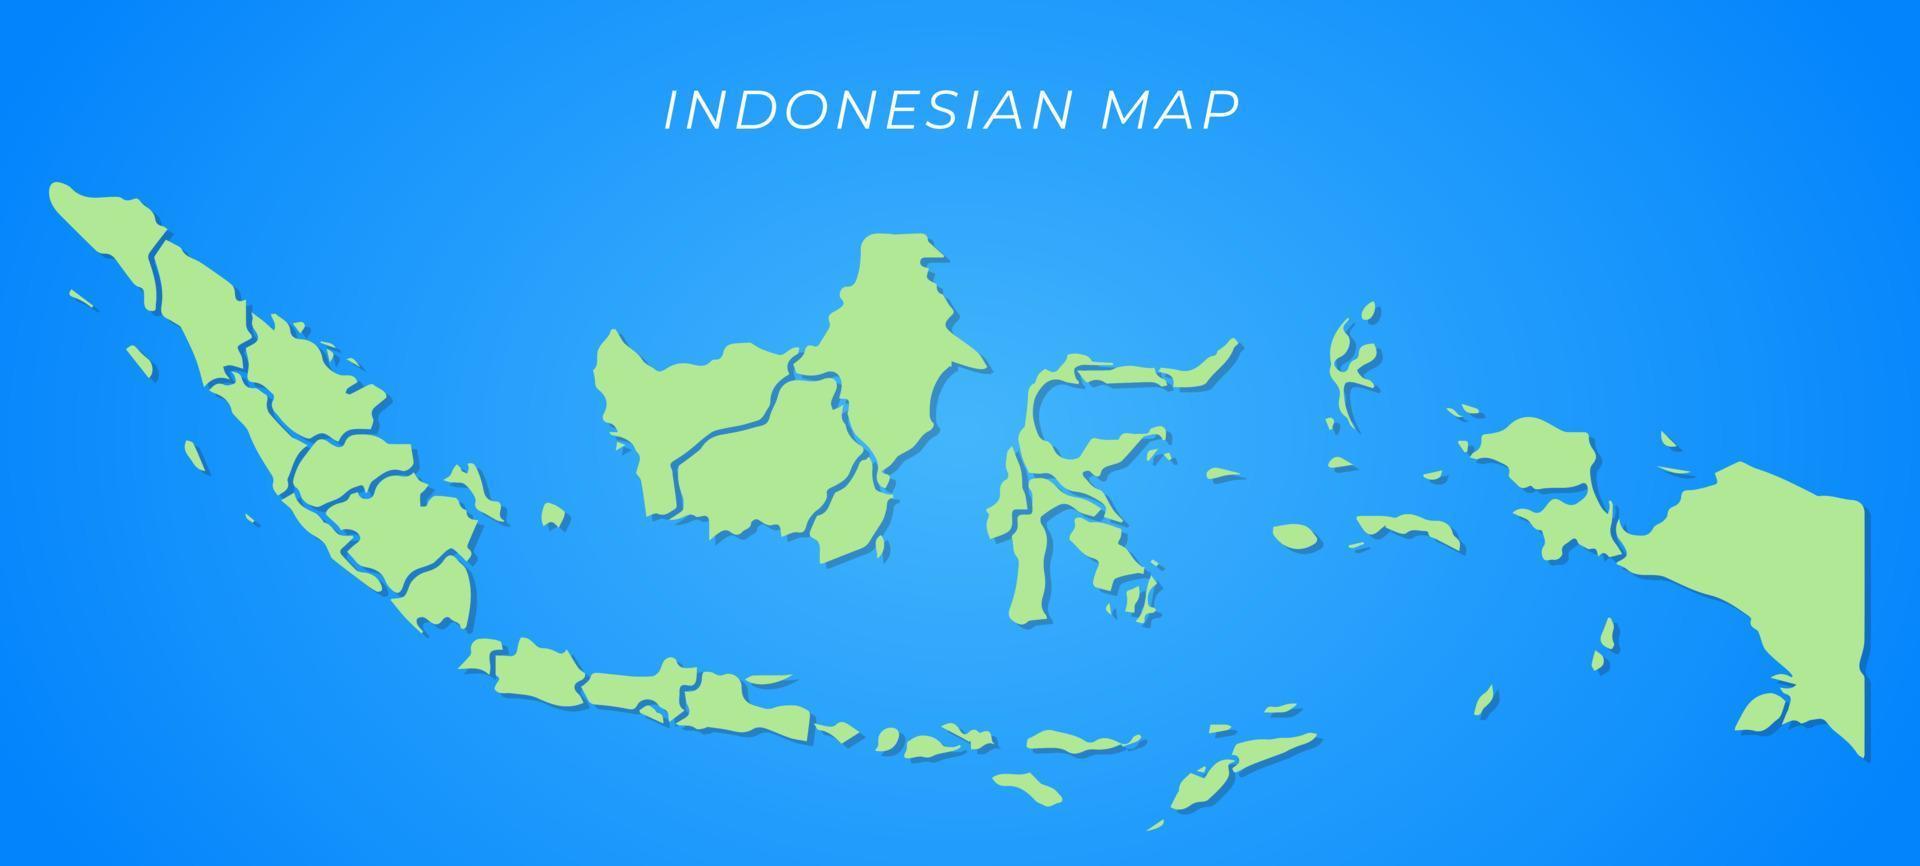 vetor de mapa da indonésia com mapa verde e fundo azul